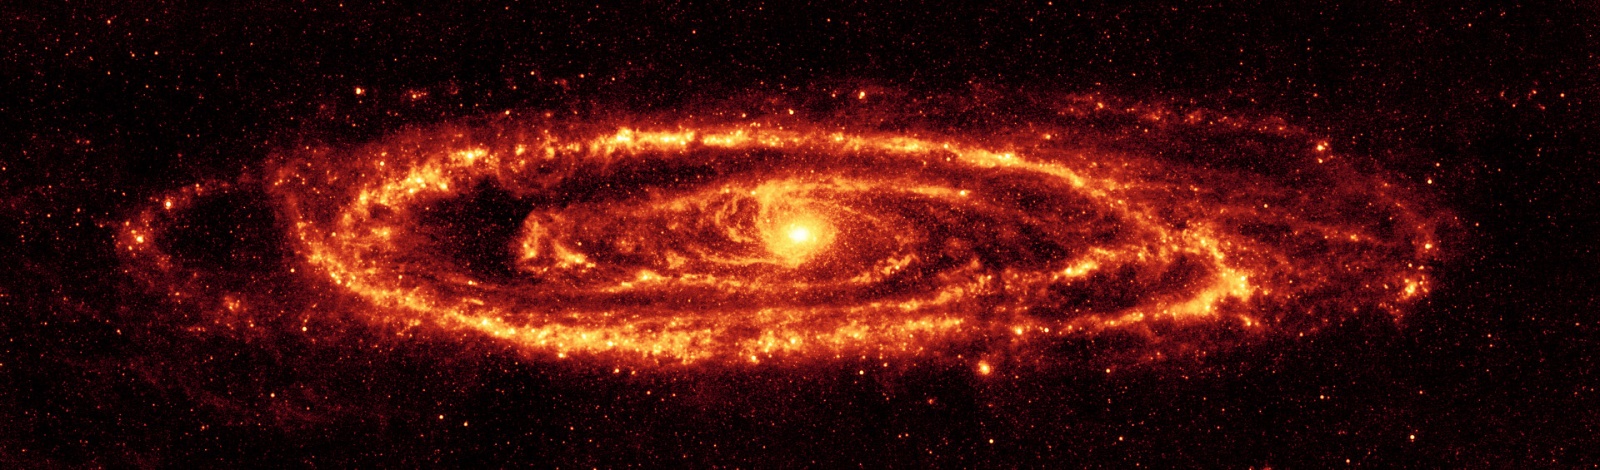 Изображение Галактики Андромеды в инфракрасном диапазоне спектра электромагнитных волн. Снимок получен космическим телескопом Спитцер  